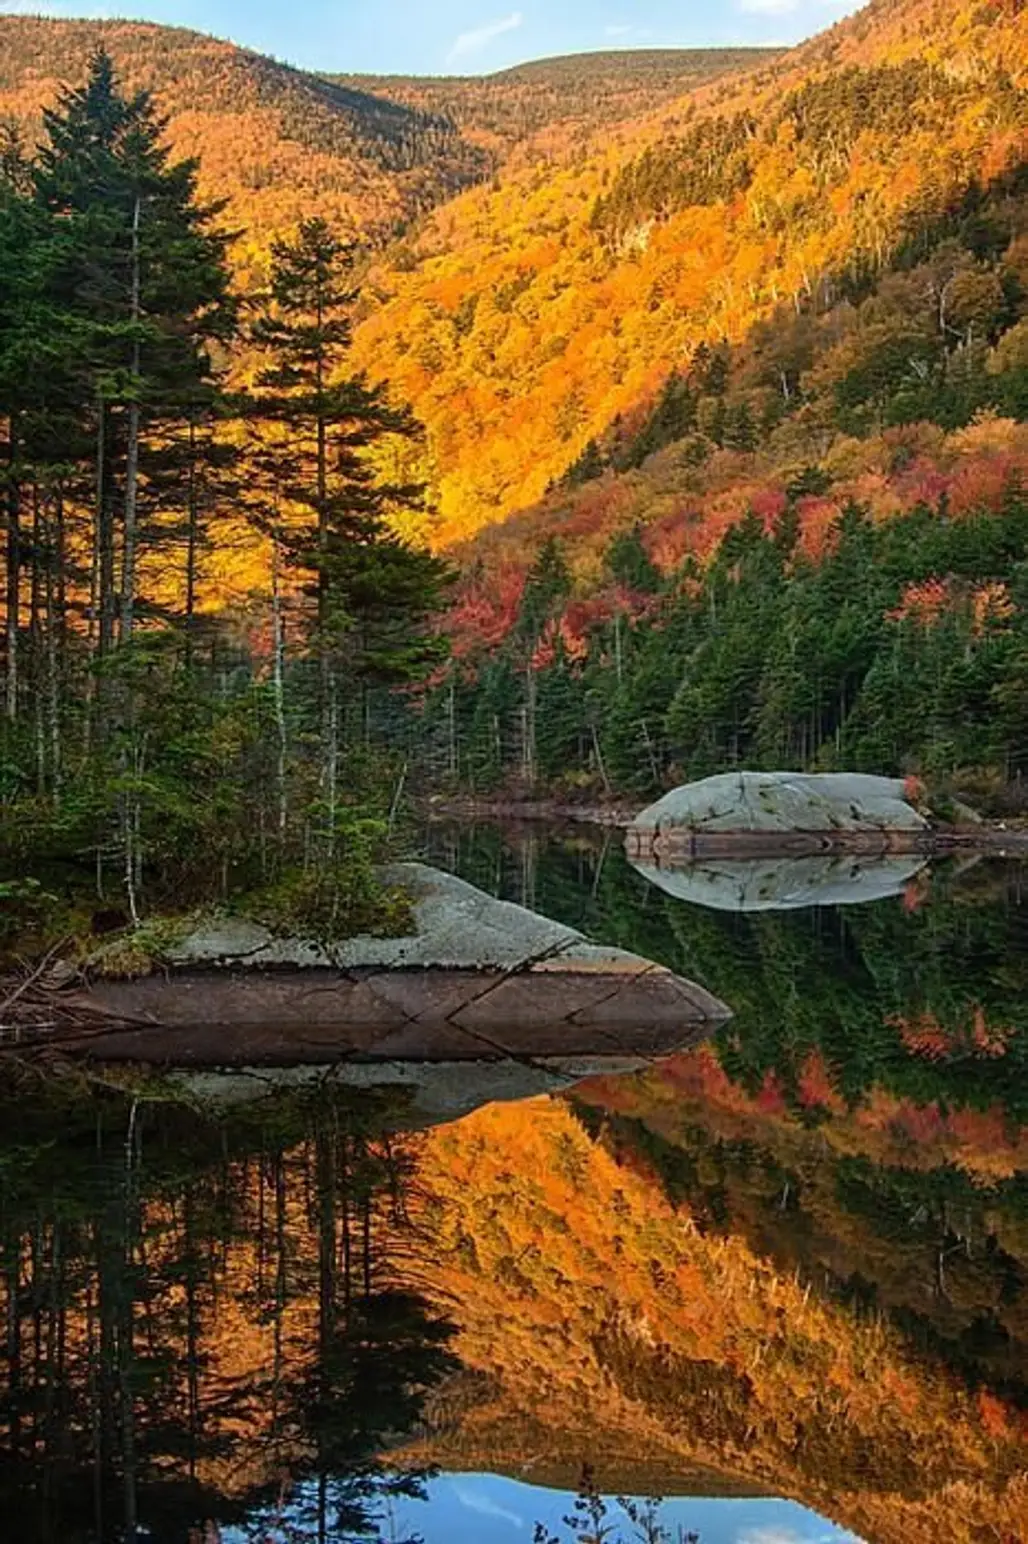 Woodstock, New Hampshire